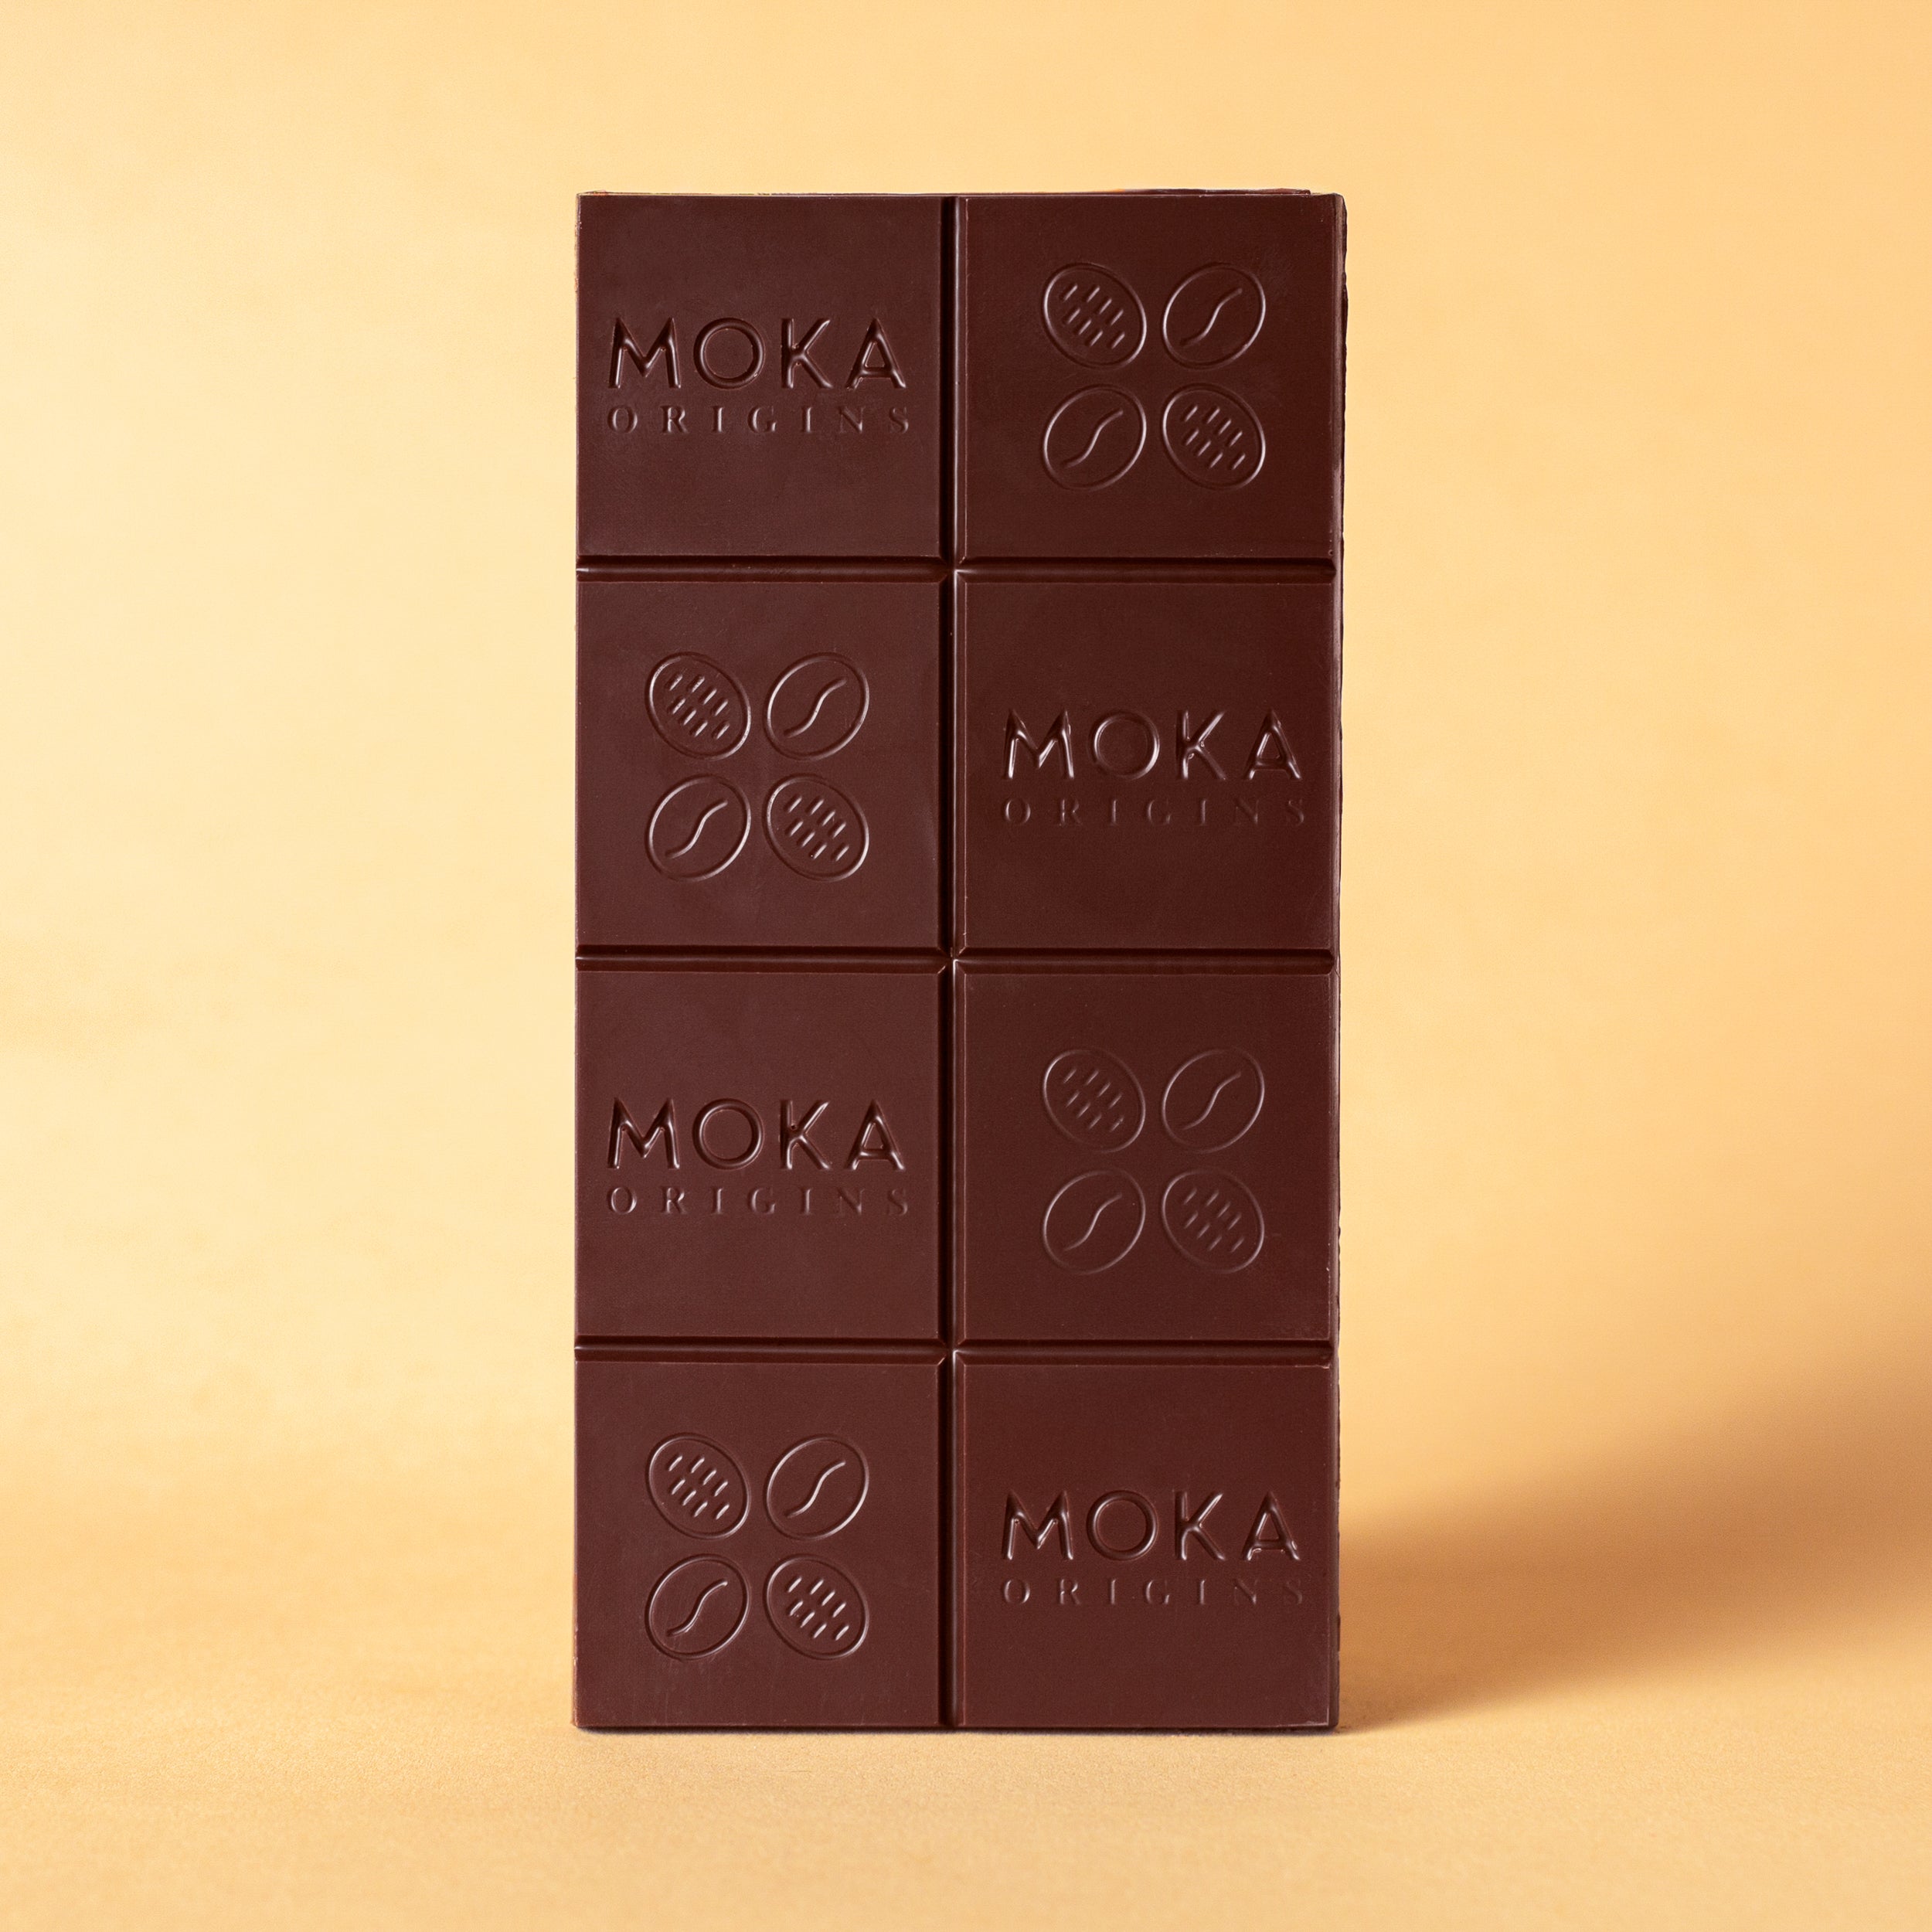 Buy wholesale BOX 30 CHOCOLATES - DARK, MILK, WHITE CHOCOLATE